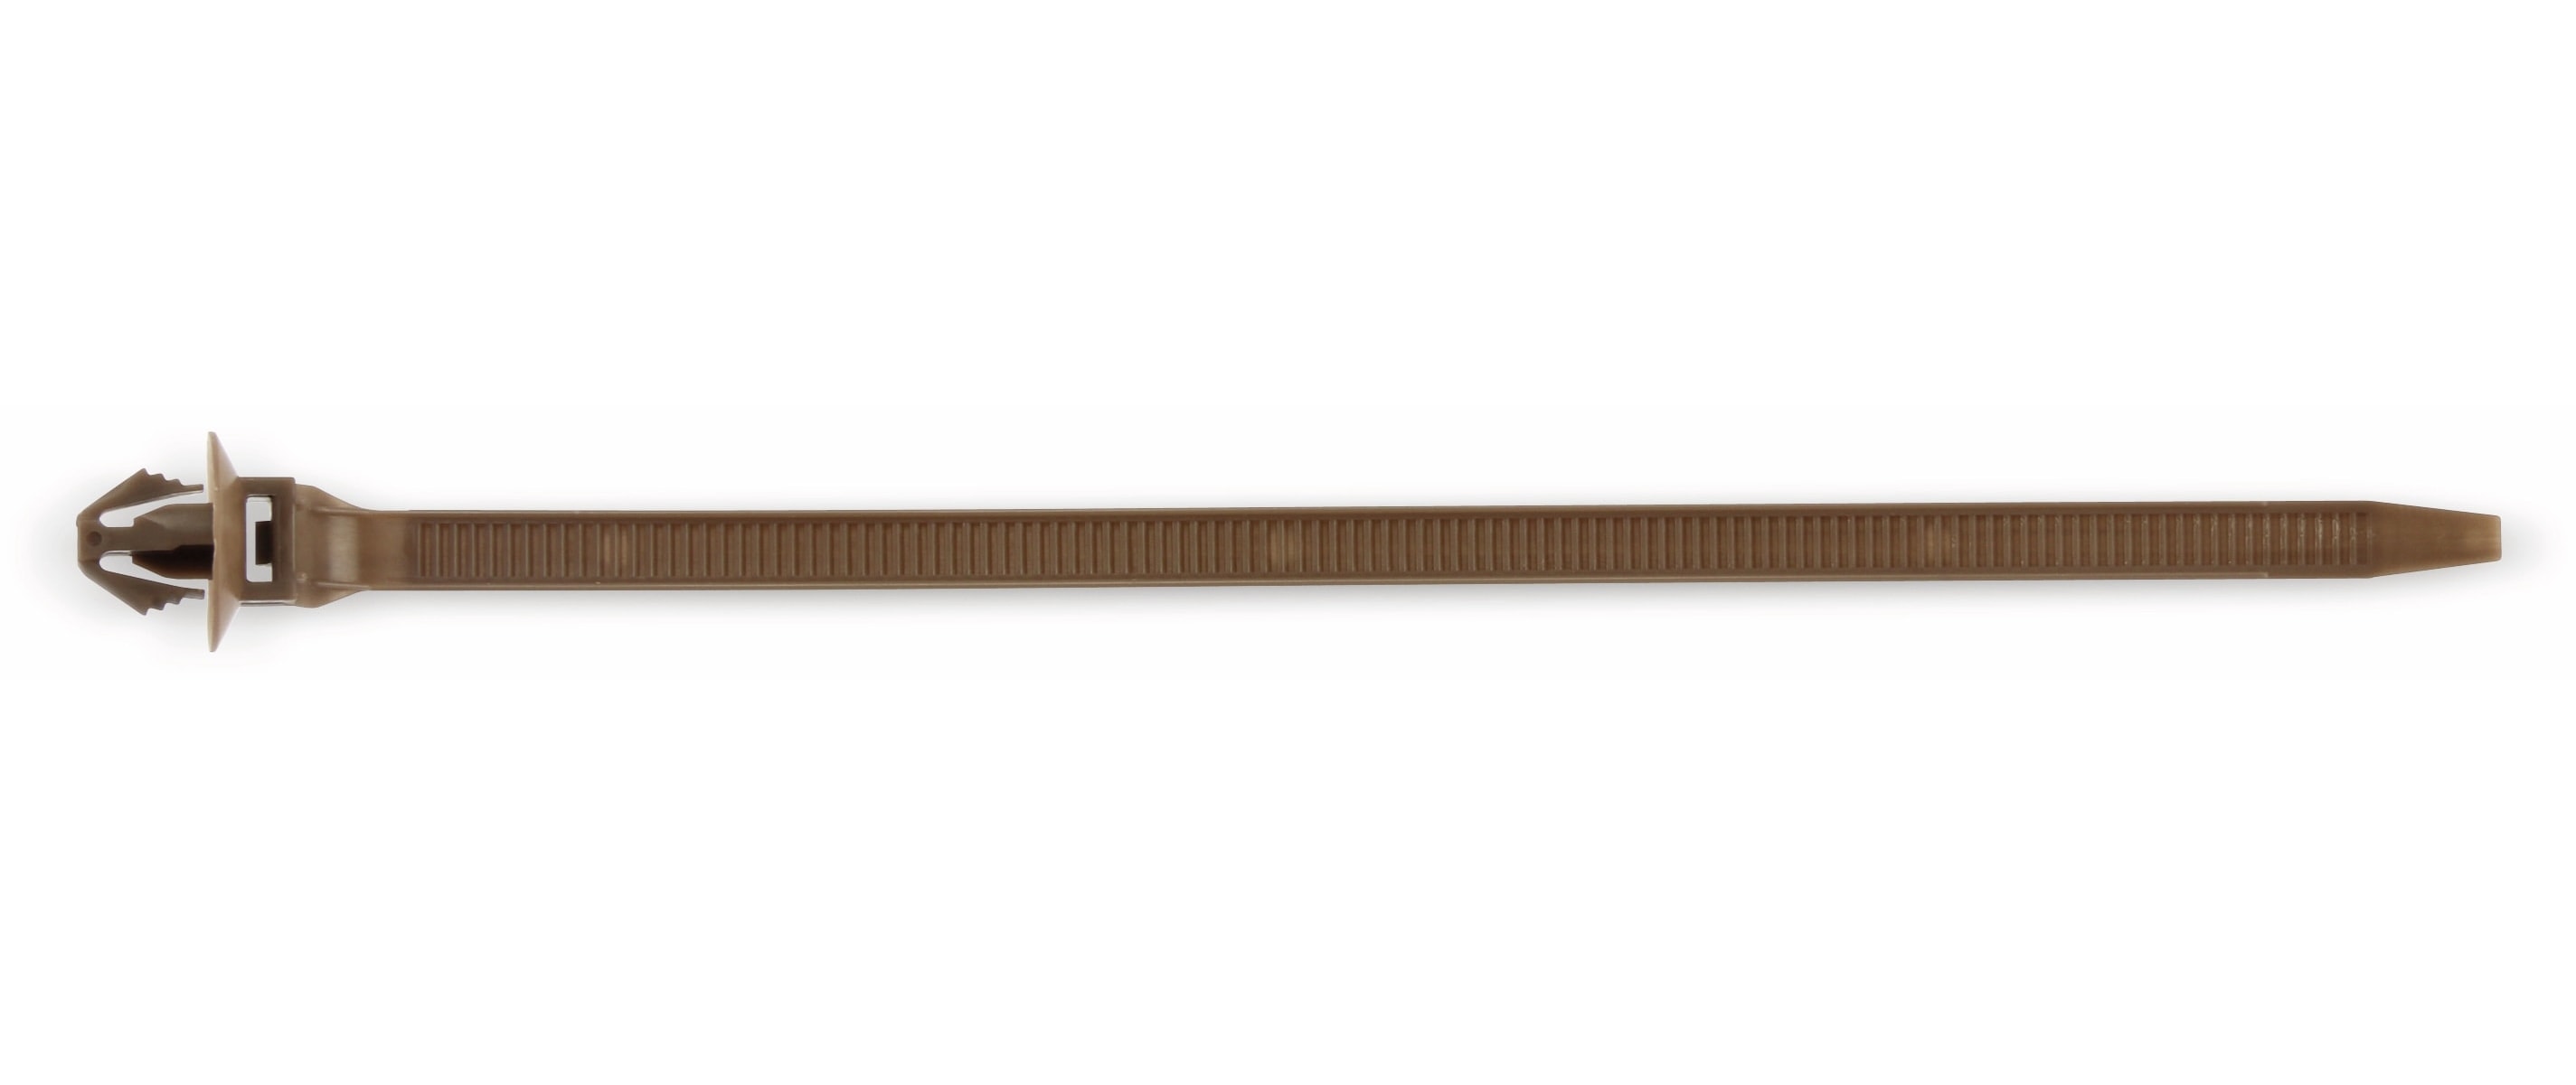 Snap-in Kabelbinder, 150 mm, braun